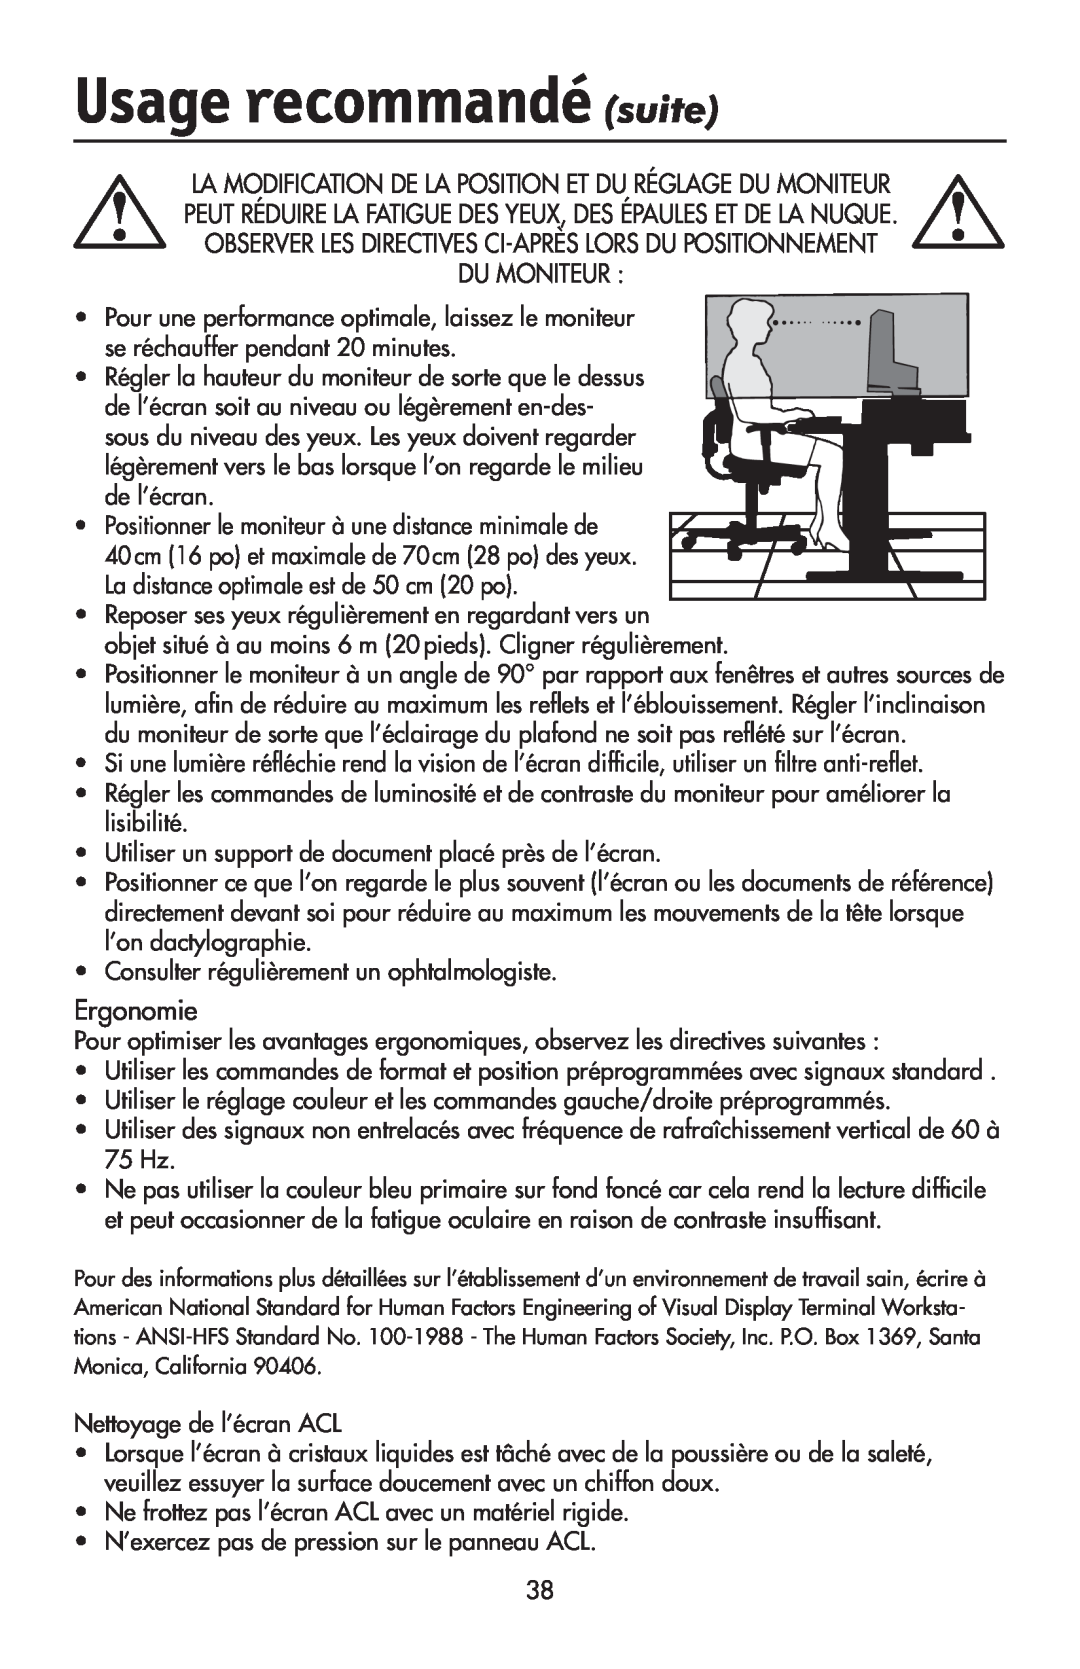 NEC LCD1970V user manual Usage recommandé suite, Du Moniteur, Ergonomie 